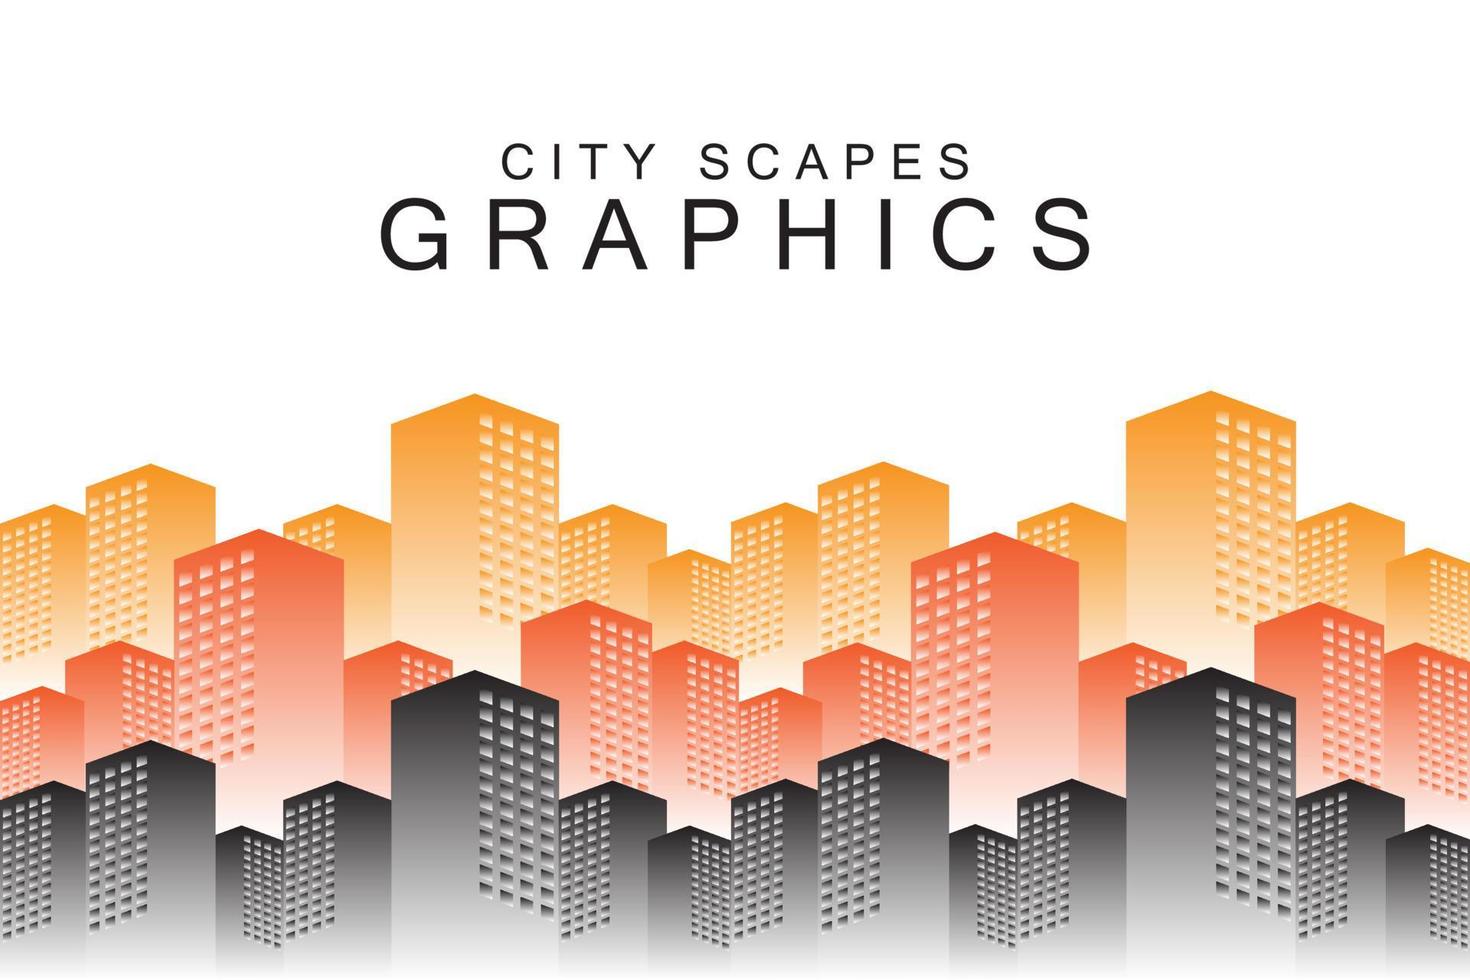 stadsbildsgrafik, vektorillustrationskoncept för sociala medier banners och inlägg, affärspresentation och rapportmallar, marknadsföringsmaterial, tryckdesign. vektor